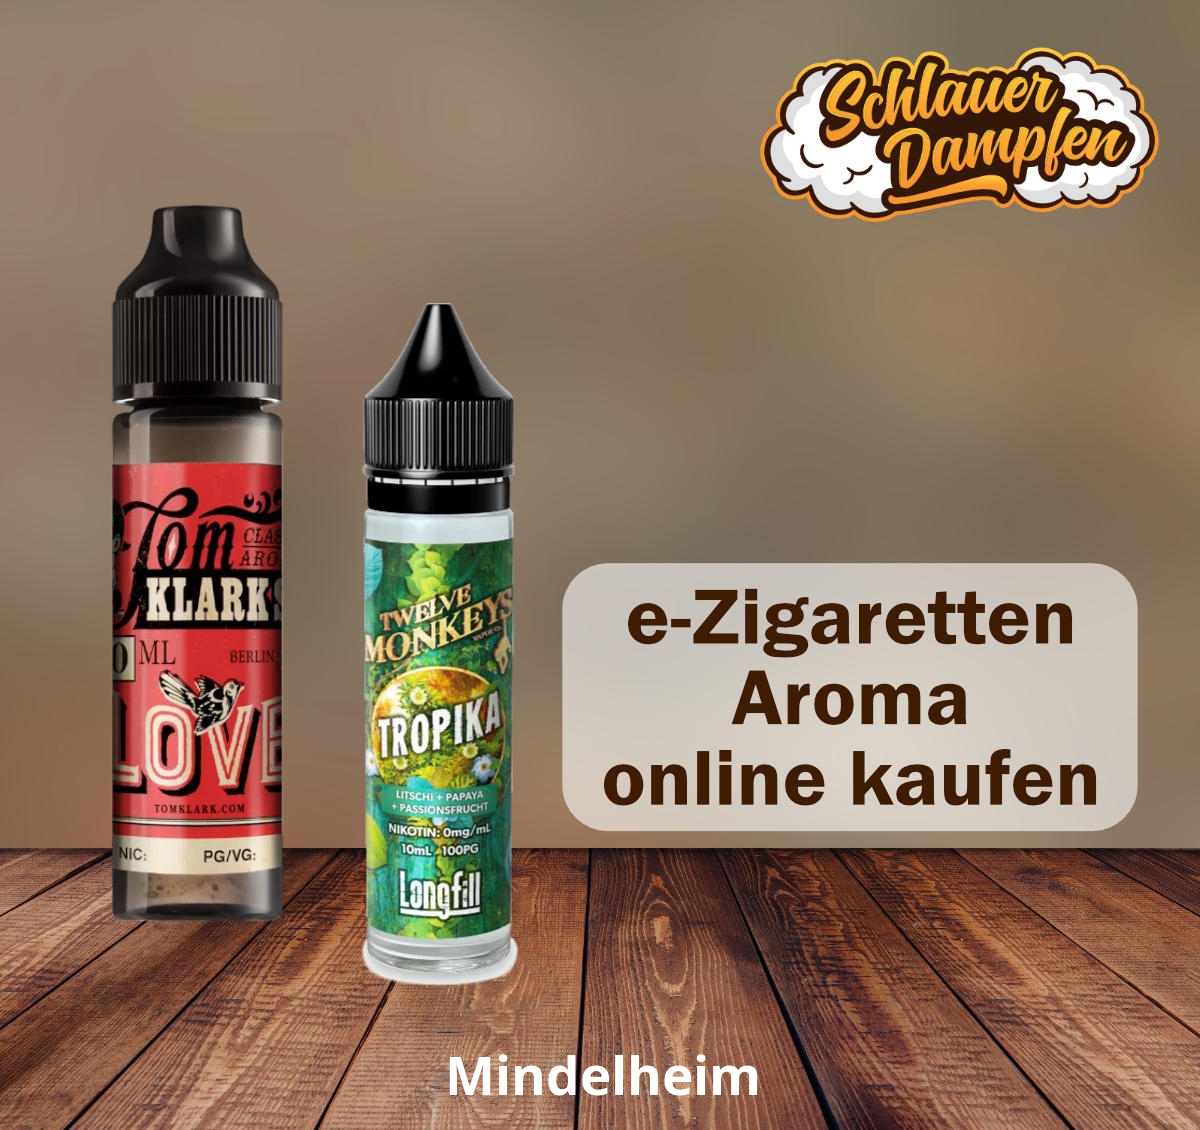 e-Zigaretten kaufen Mindelheim - Liquid und Aroma Mindelheim